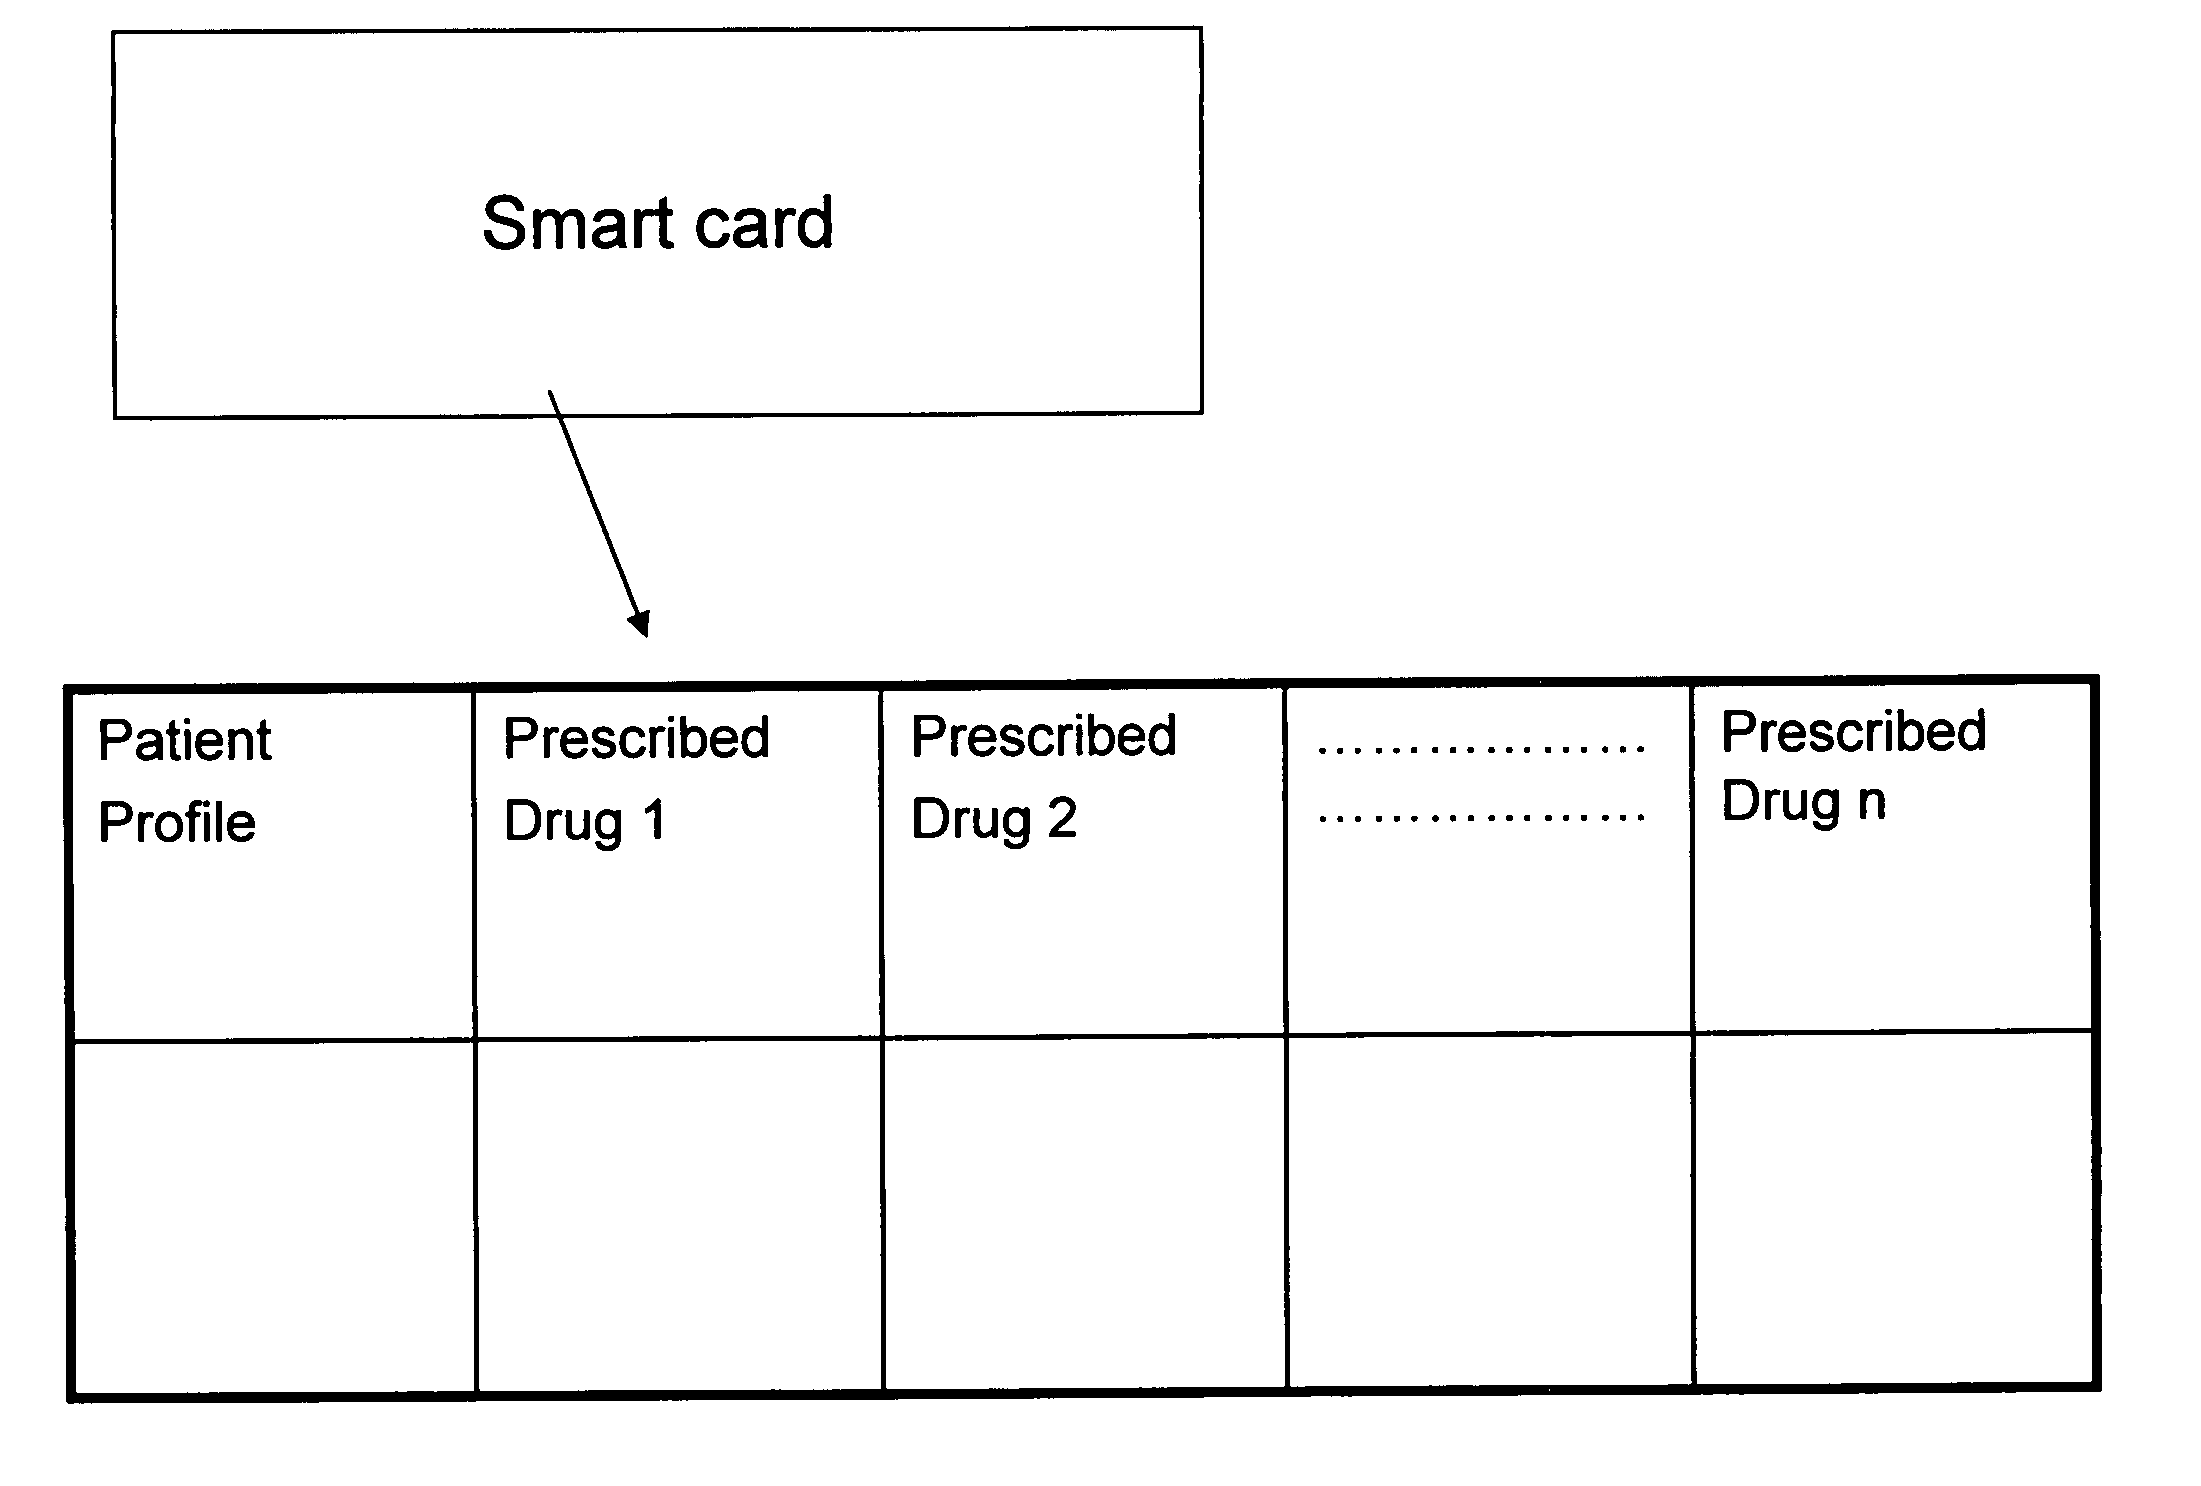 Smart card for pharmaceutical consumer